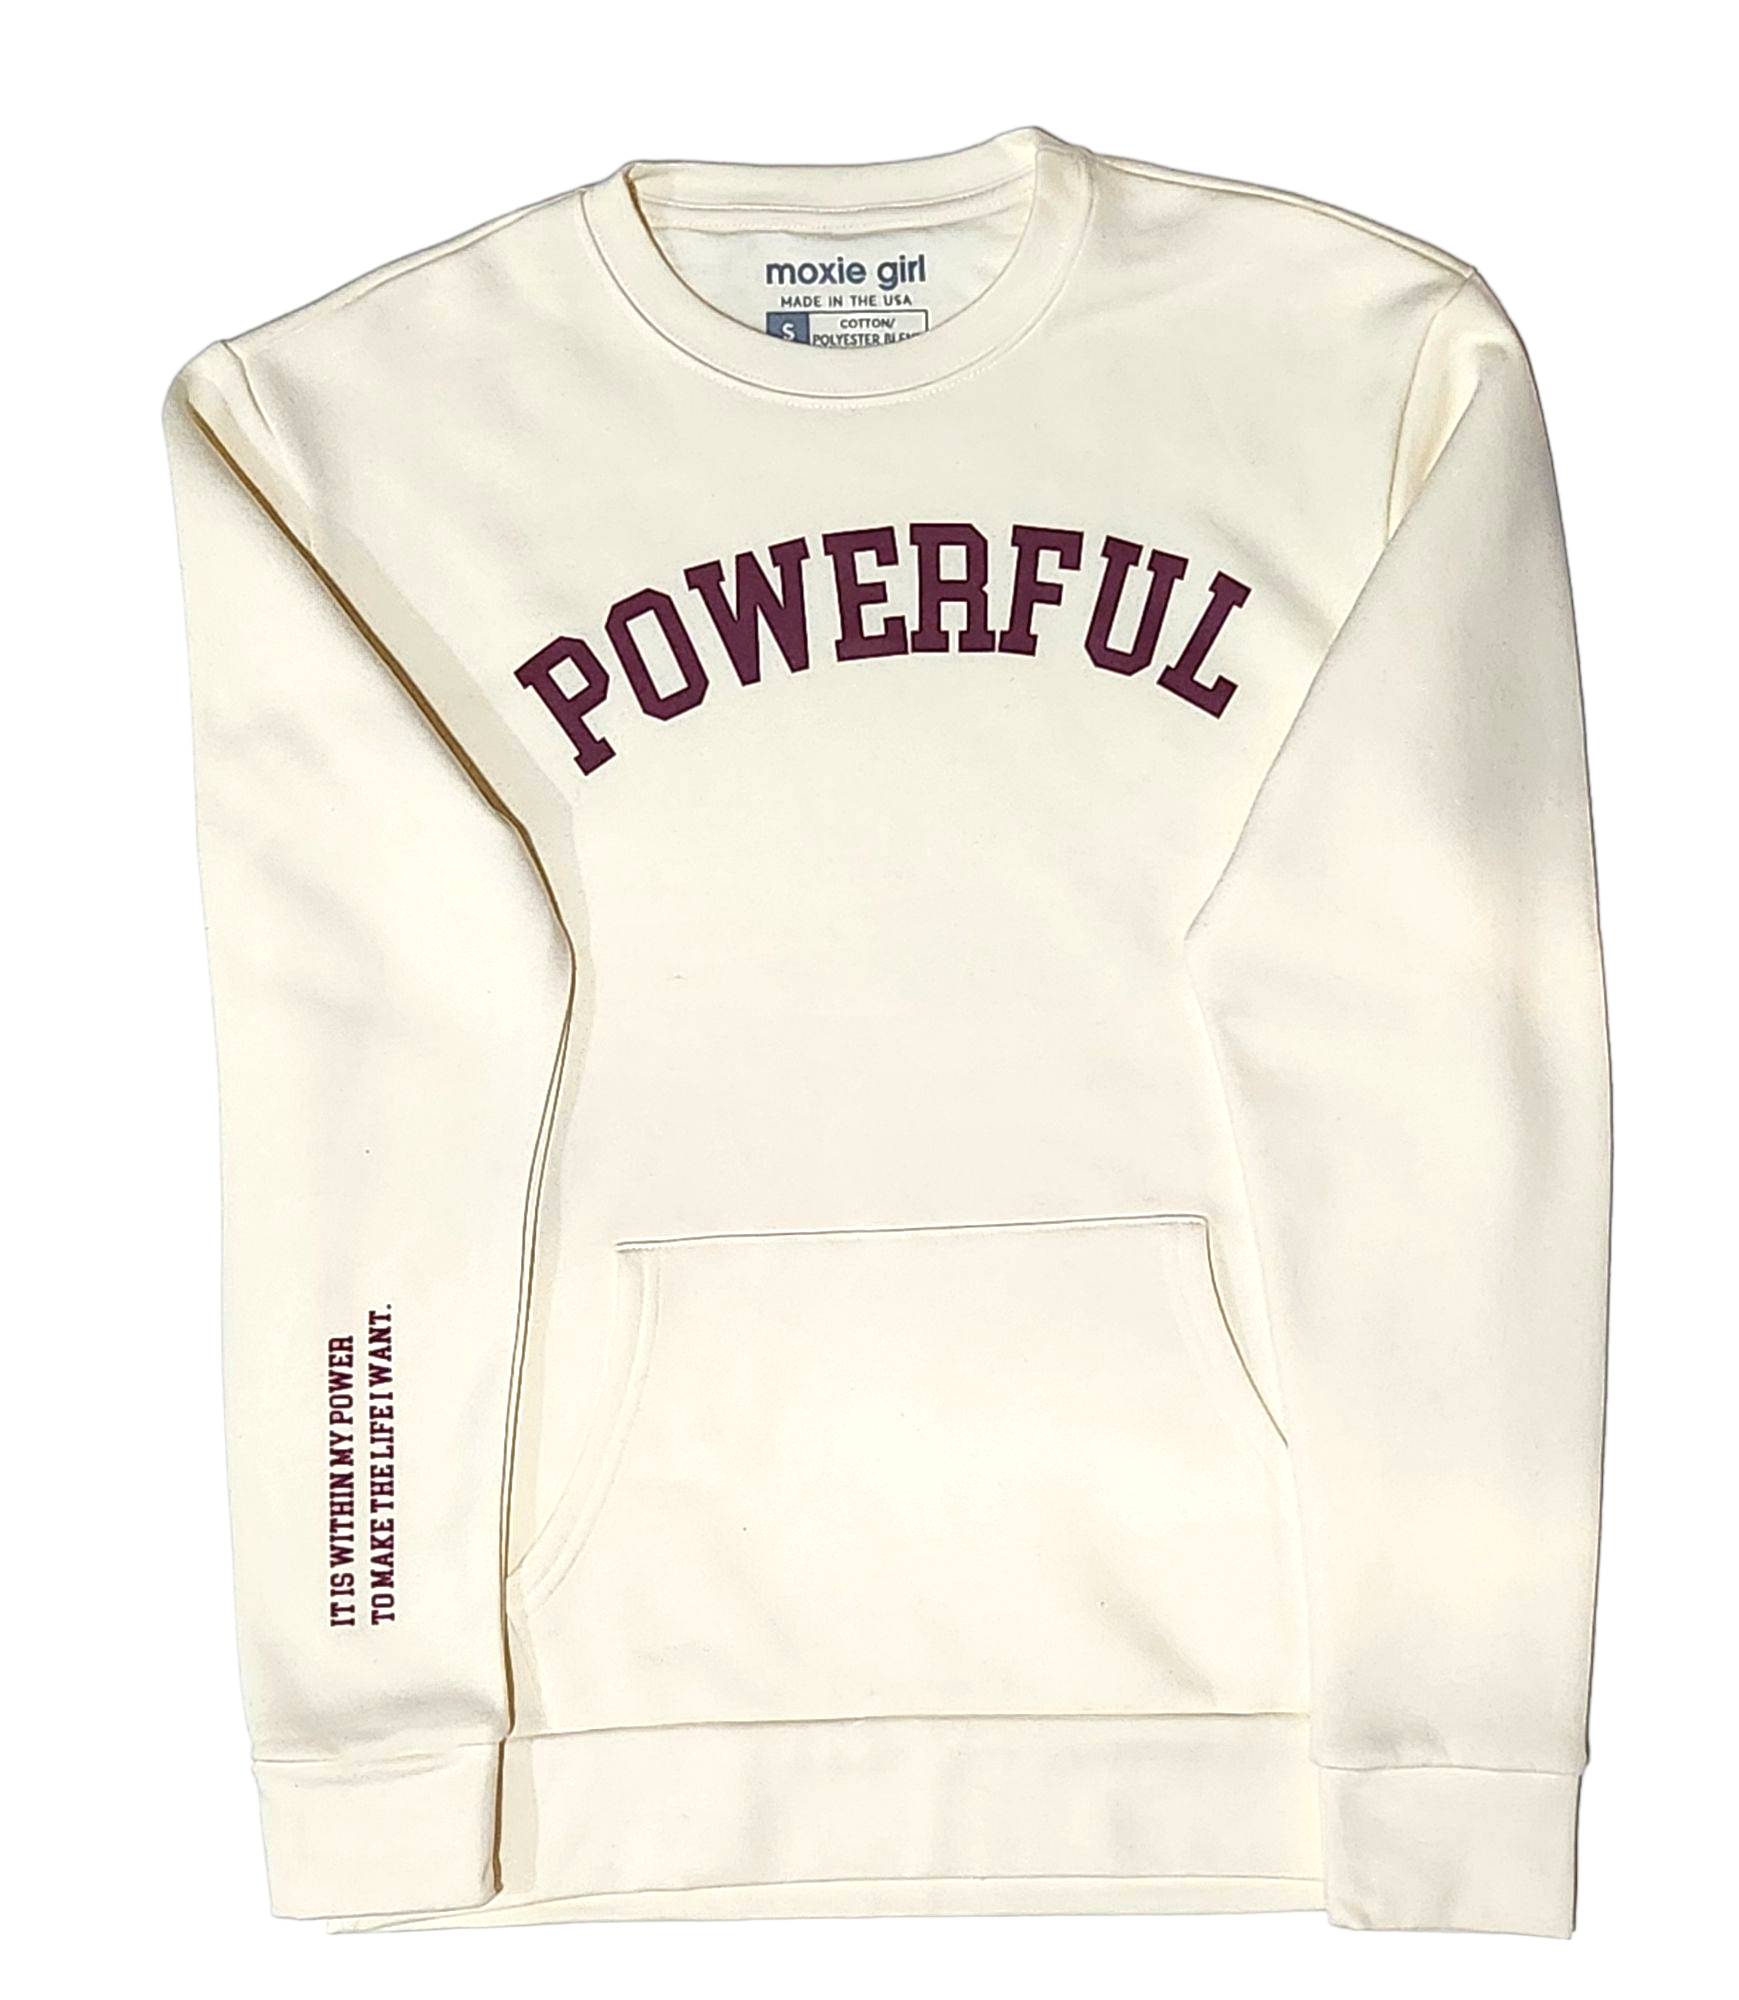 POWERFUL crewneck pocketed sweatshirt – Vanilla and Maroon